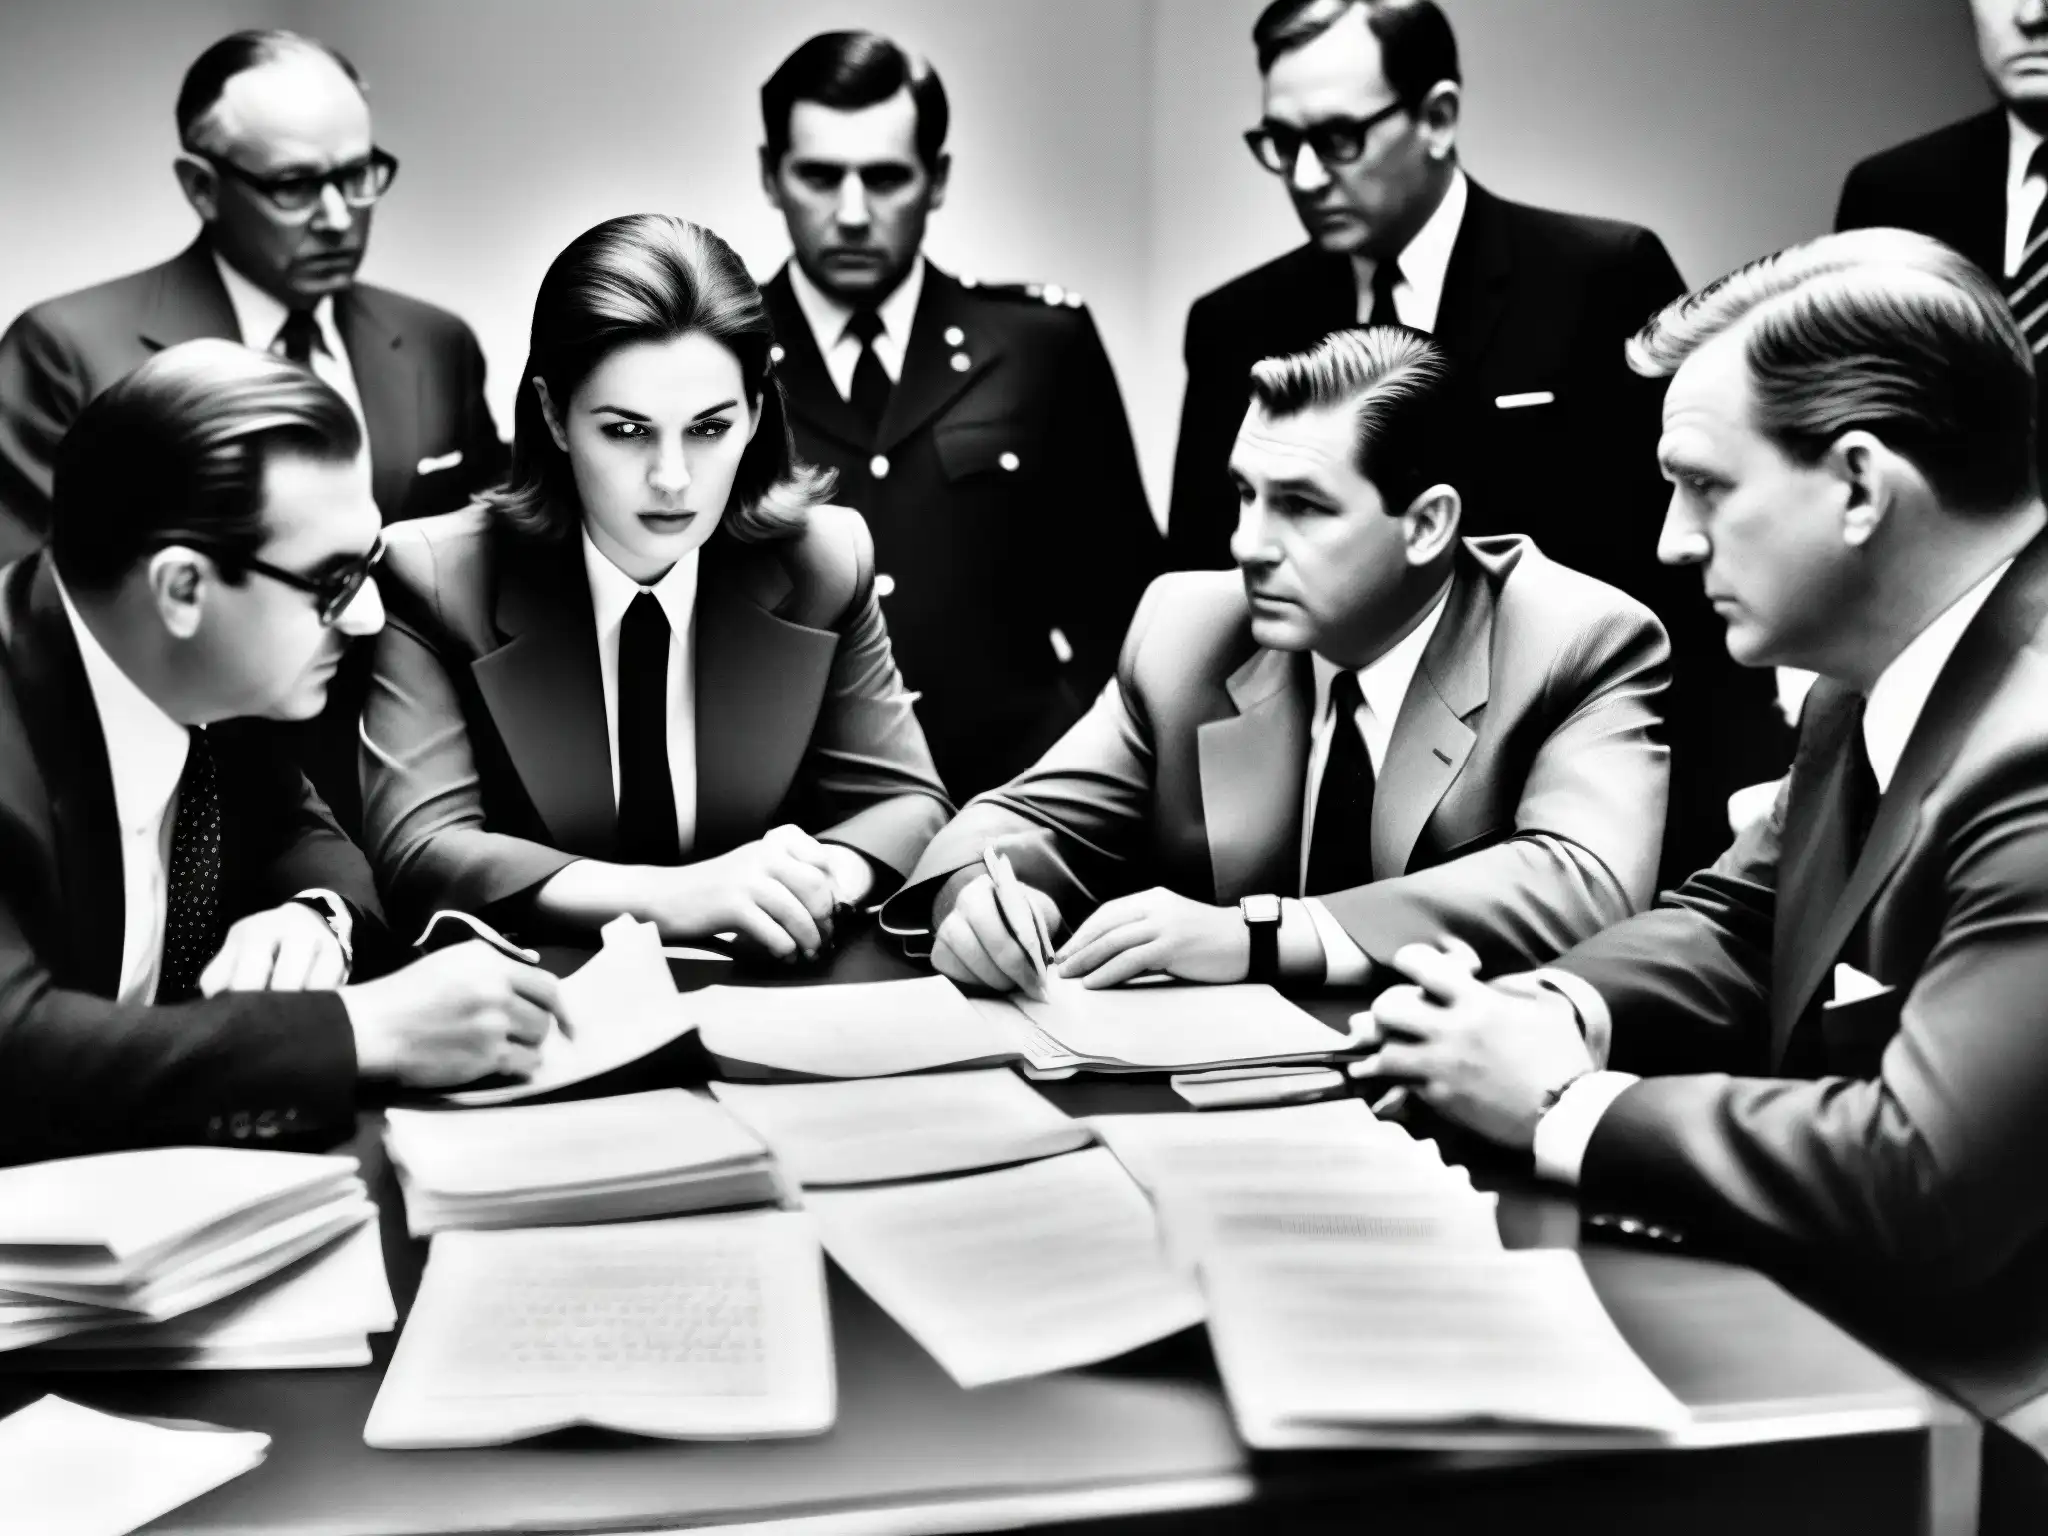 Un grupo de agentes de la CIA discute en torno a documentos en una imagen de archivo en blanco y negro